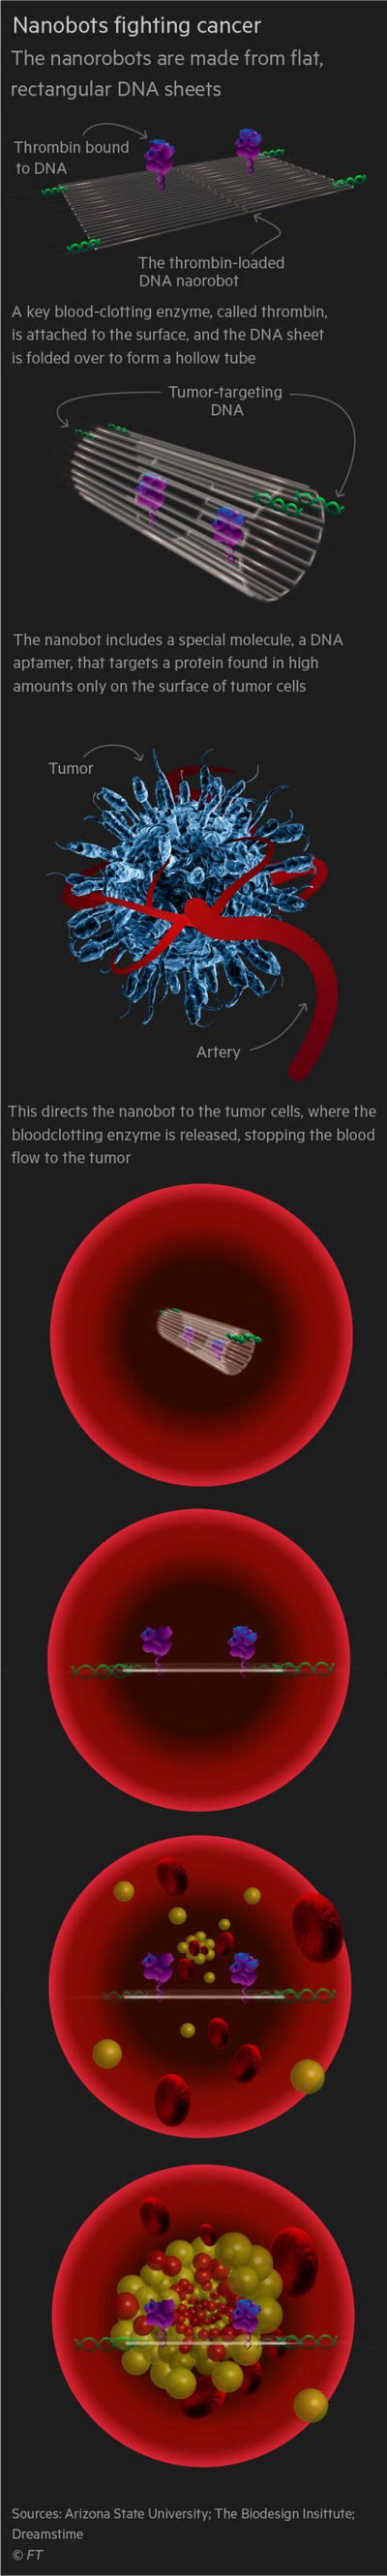 Nanobotlar